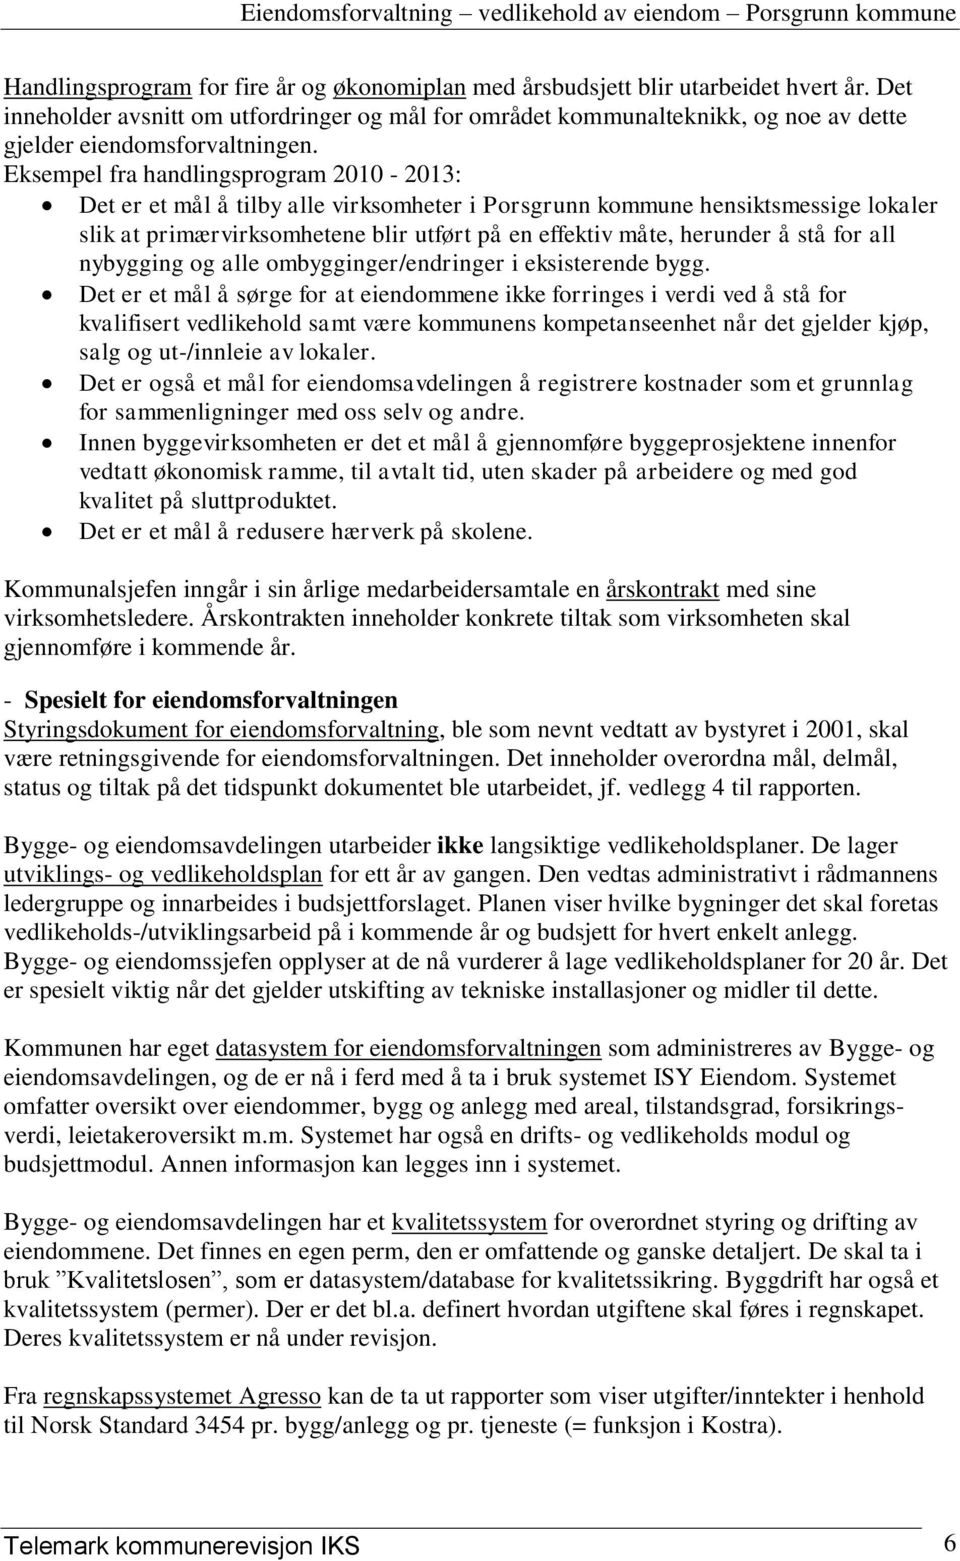 Eksempel fra handlingsprogram 2010-2013: Det er et mål å tilby alle virksomheter i Porsgrunn kommune hensiktsmessige lokaler slik at primærvirksomhetene blir utført på en effektiv måte, herunder å